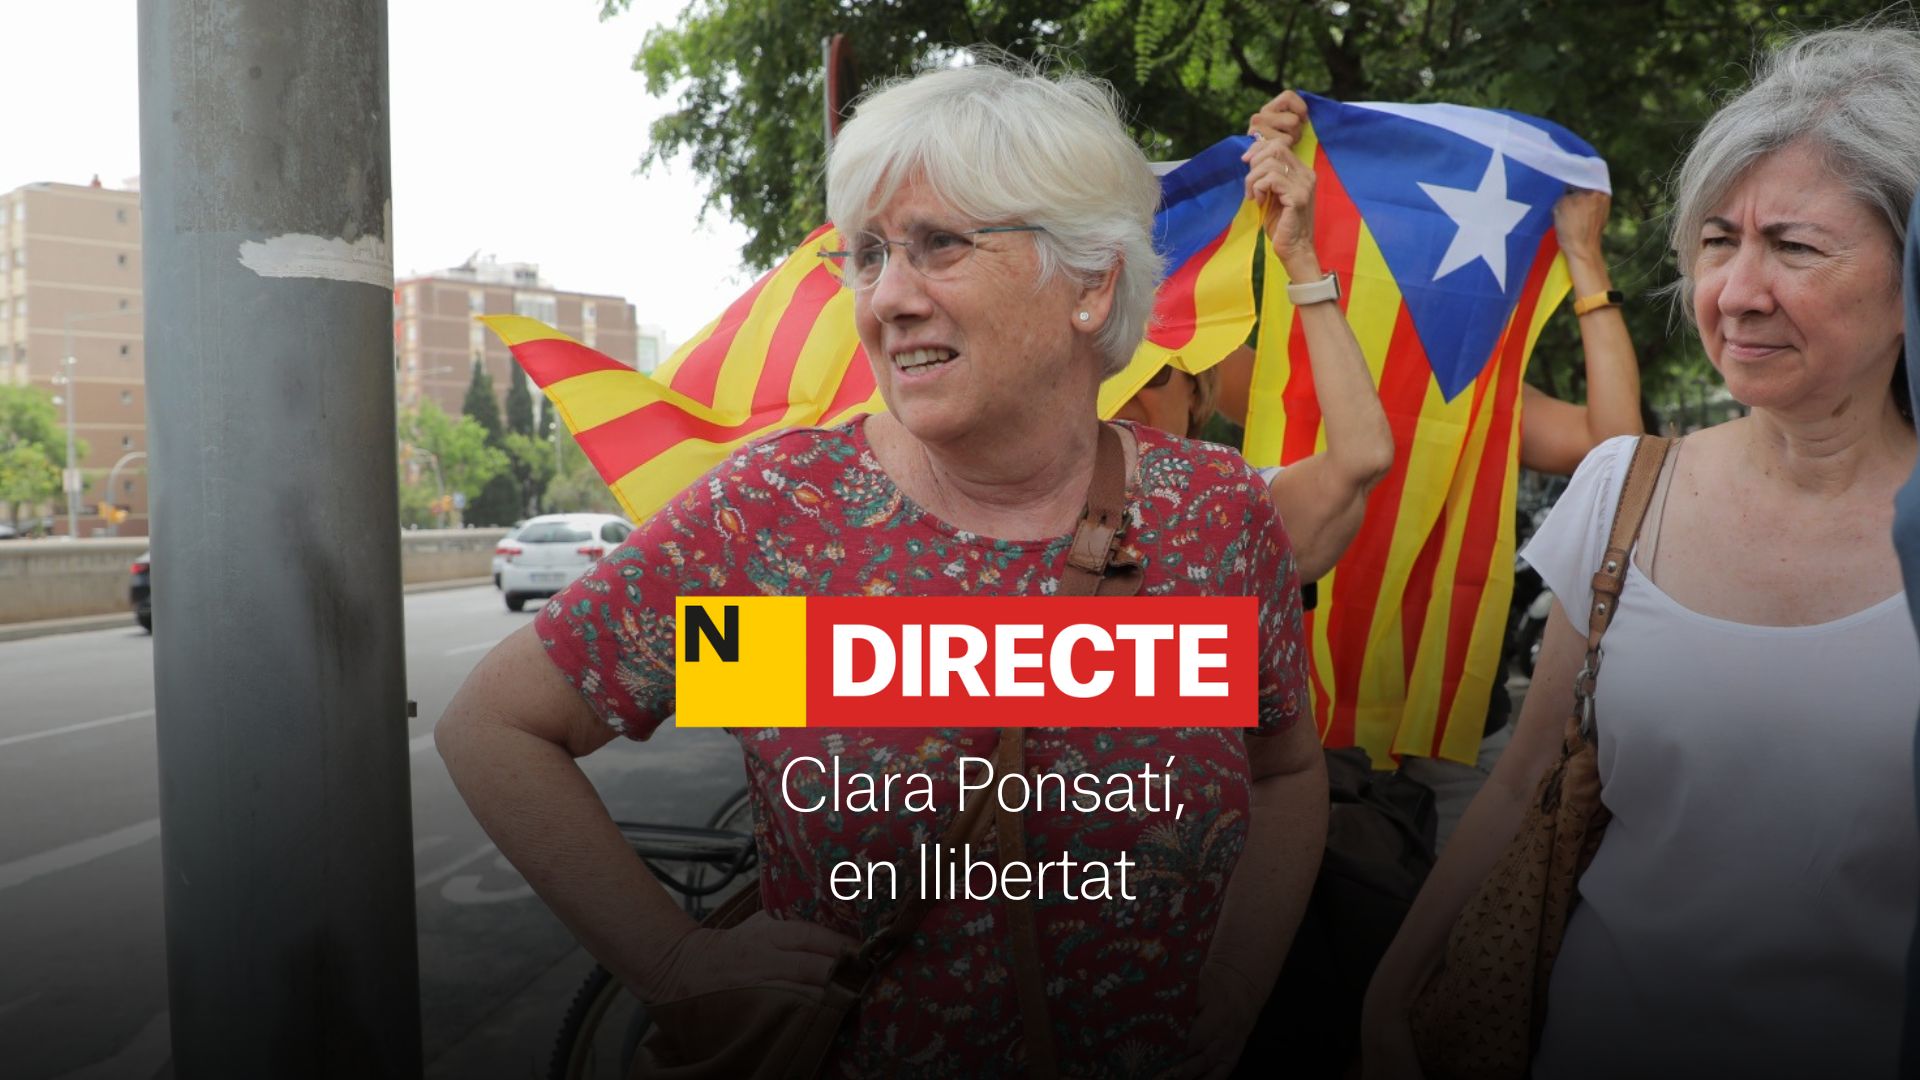 Clara Ponsatí surt en llibertat després de ser detinguda pels Mossos a Barcelona, DIRECTE